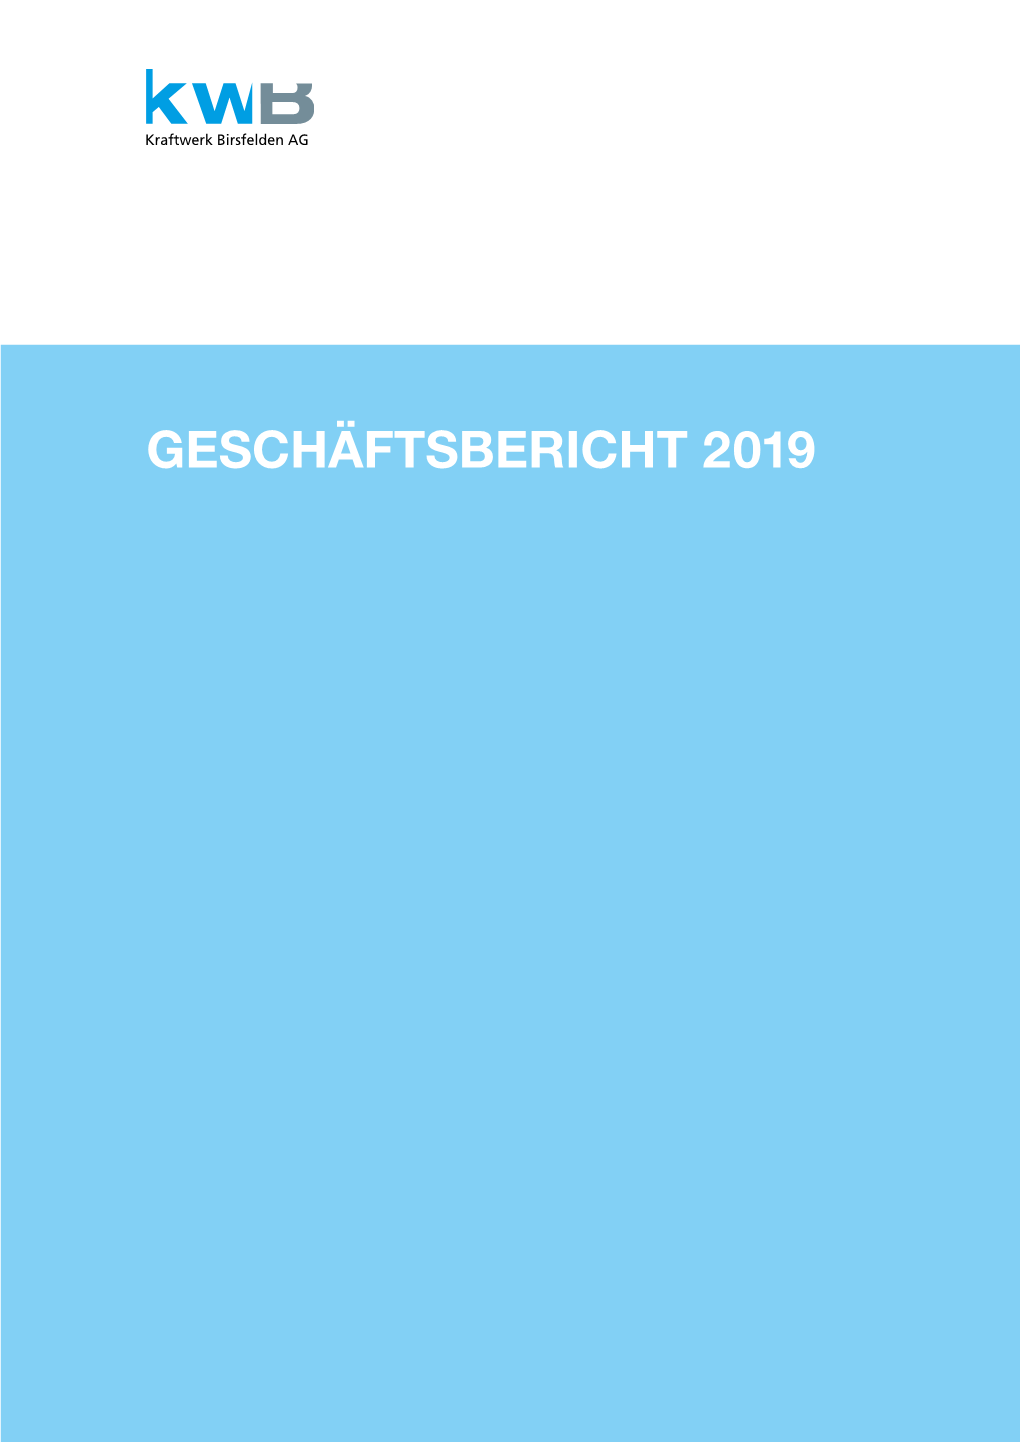 GESCHÄFTSBERICHT 2019 Geschäftsbericht 2019 Kraftwerk Birsfelden AG, Birsfelden INHALTSVERZEICHNIS